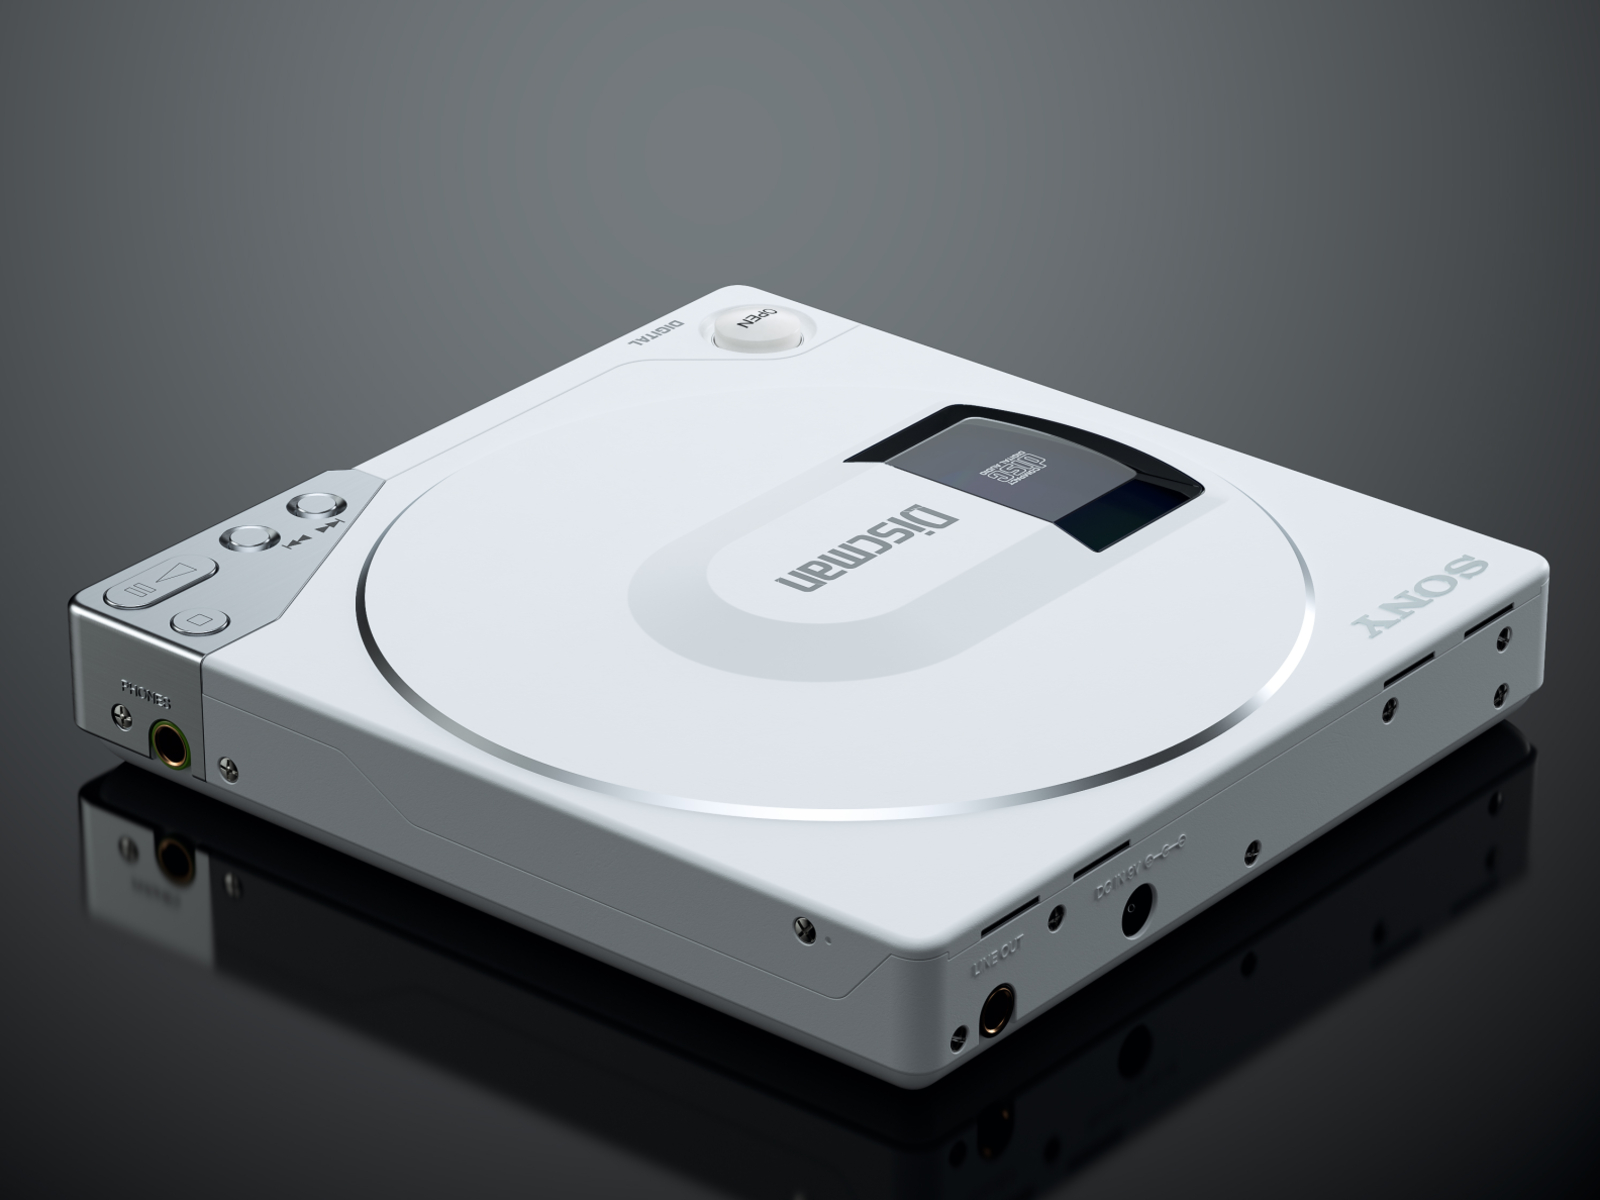 Sony Discman D-150: III by Jason Zigrino on Dribbble